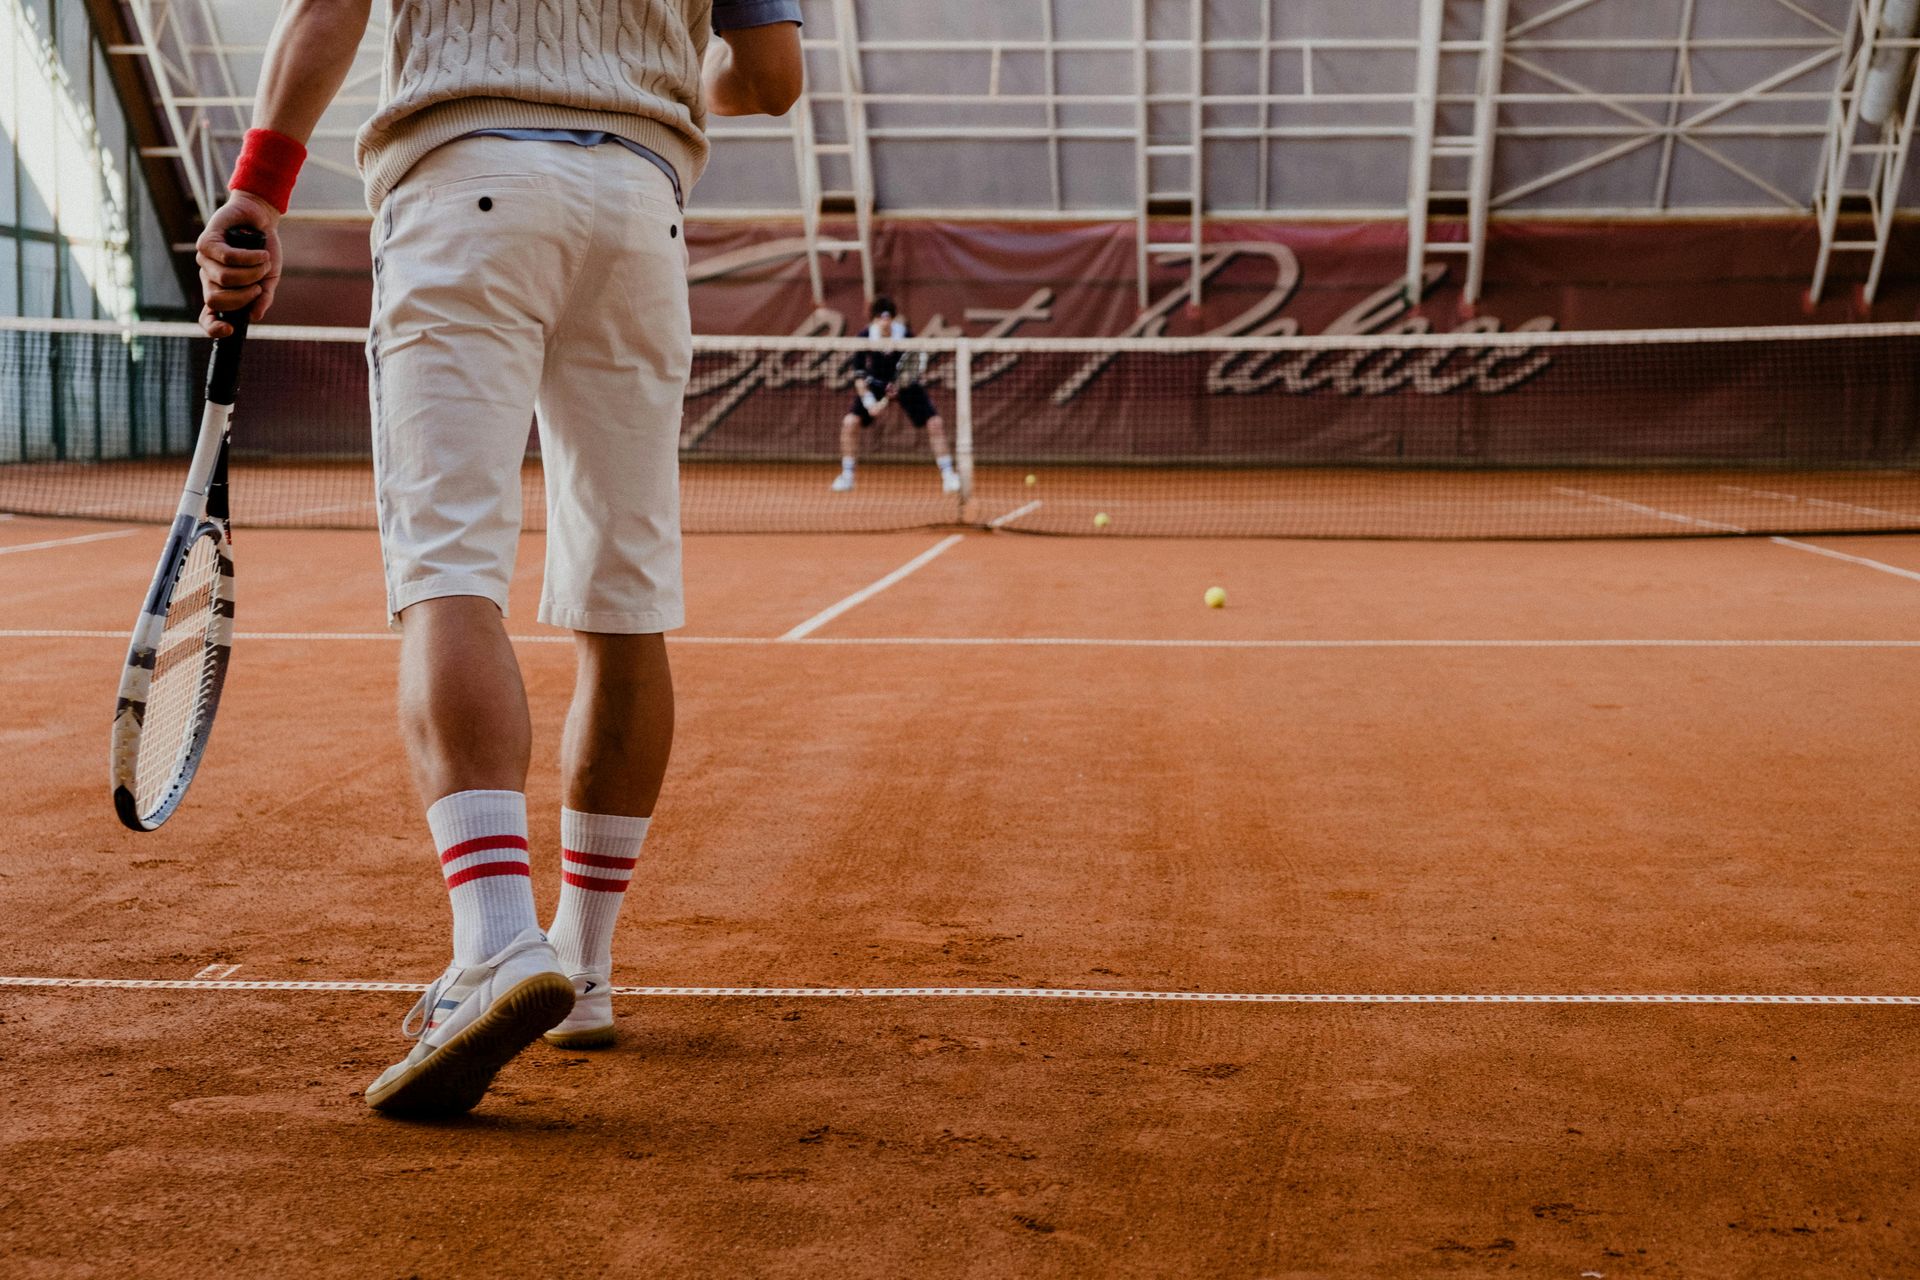 a man is holding a tennis racquet on a tennis court.